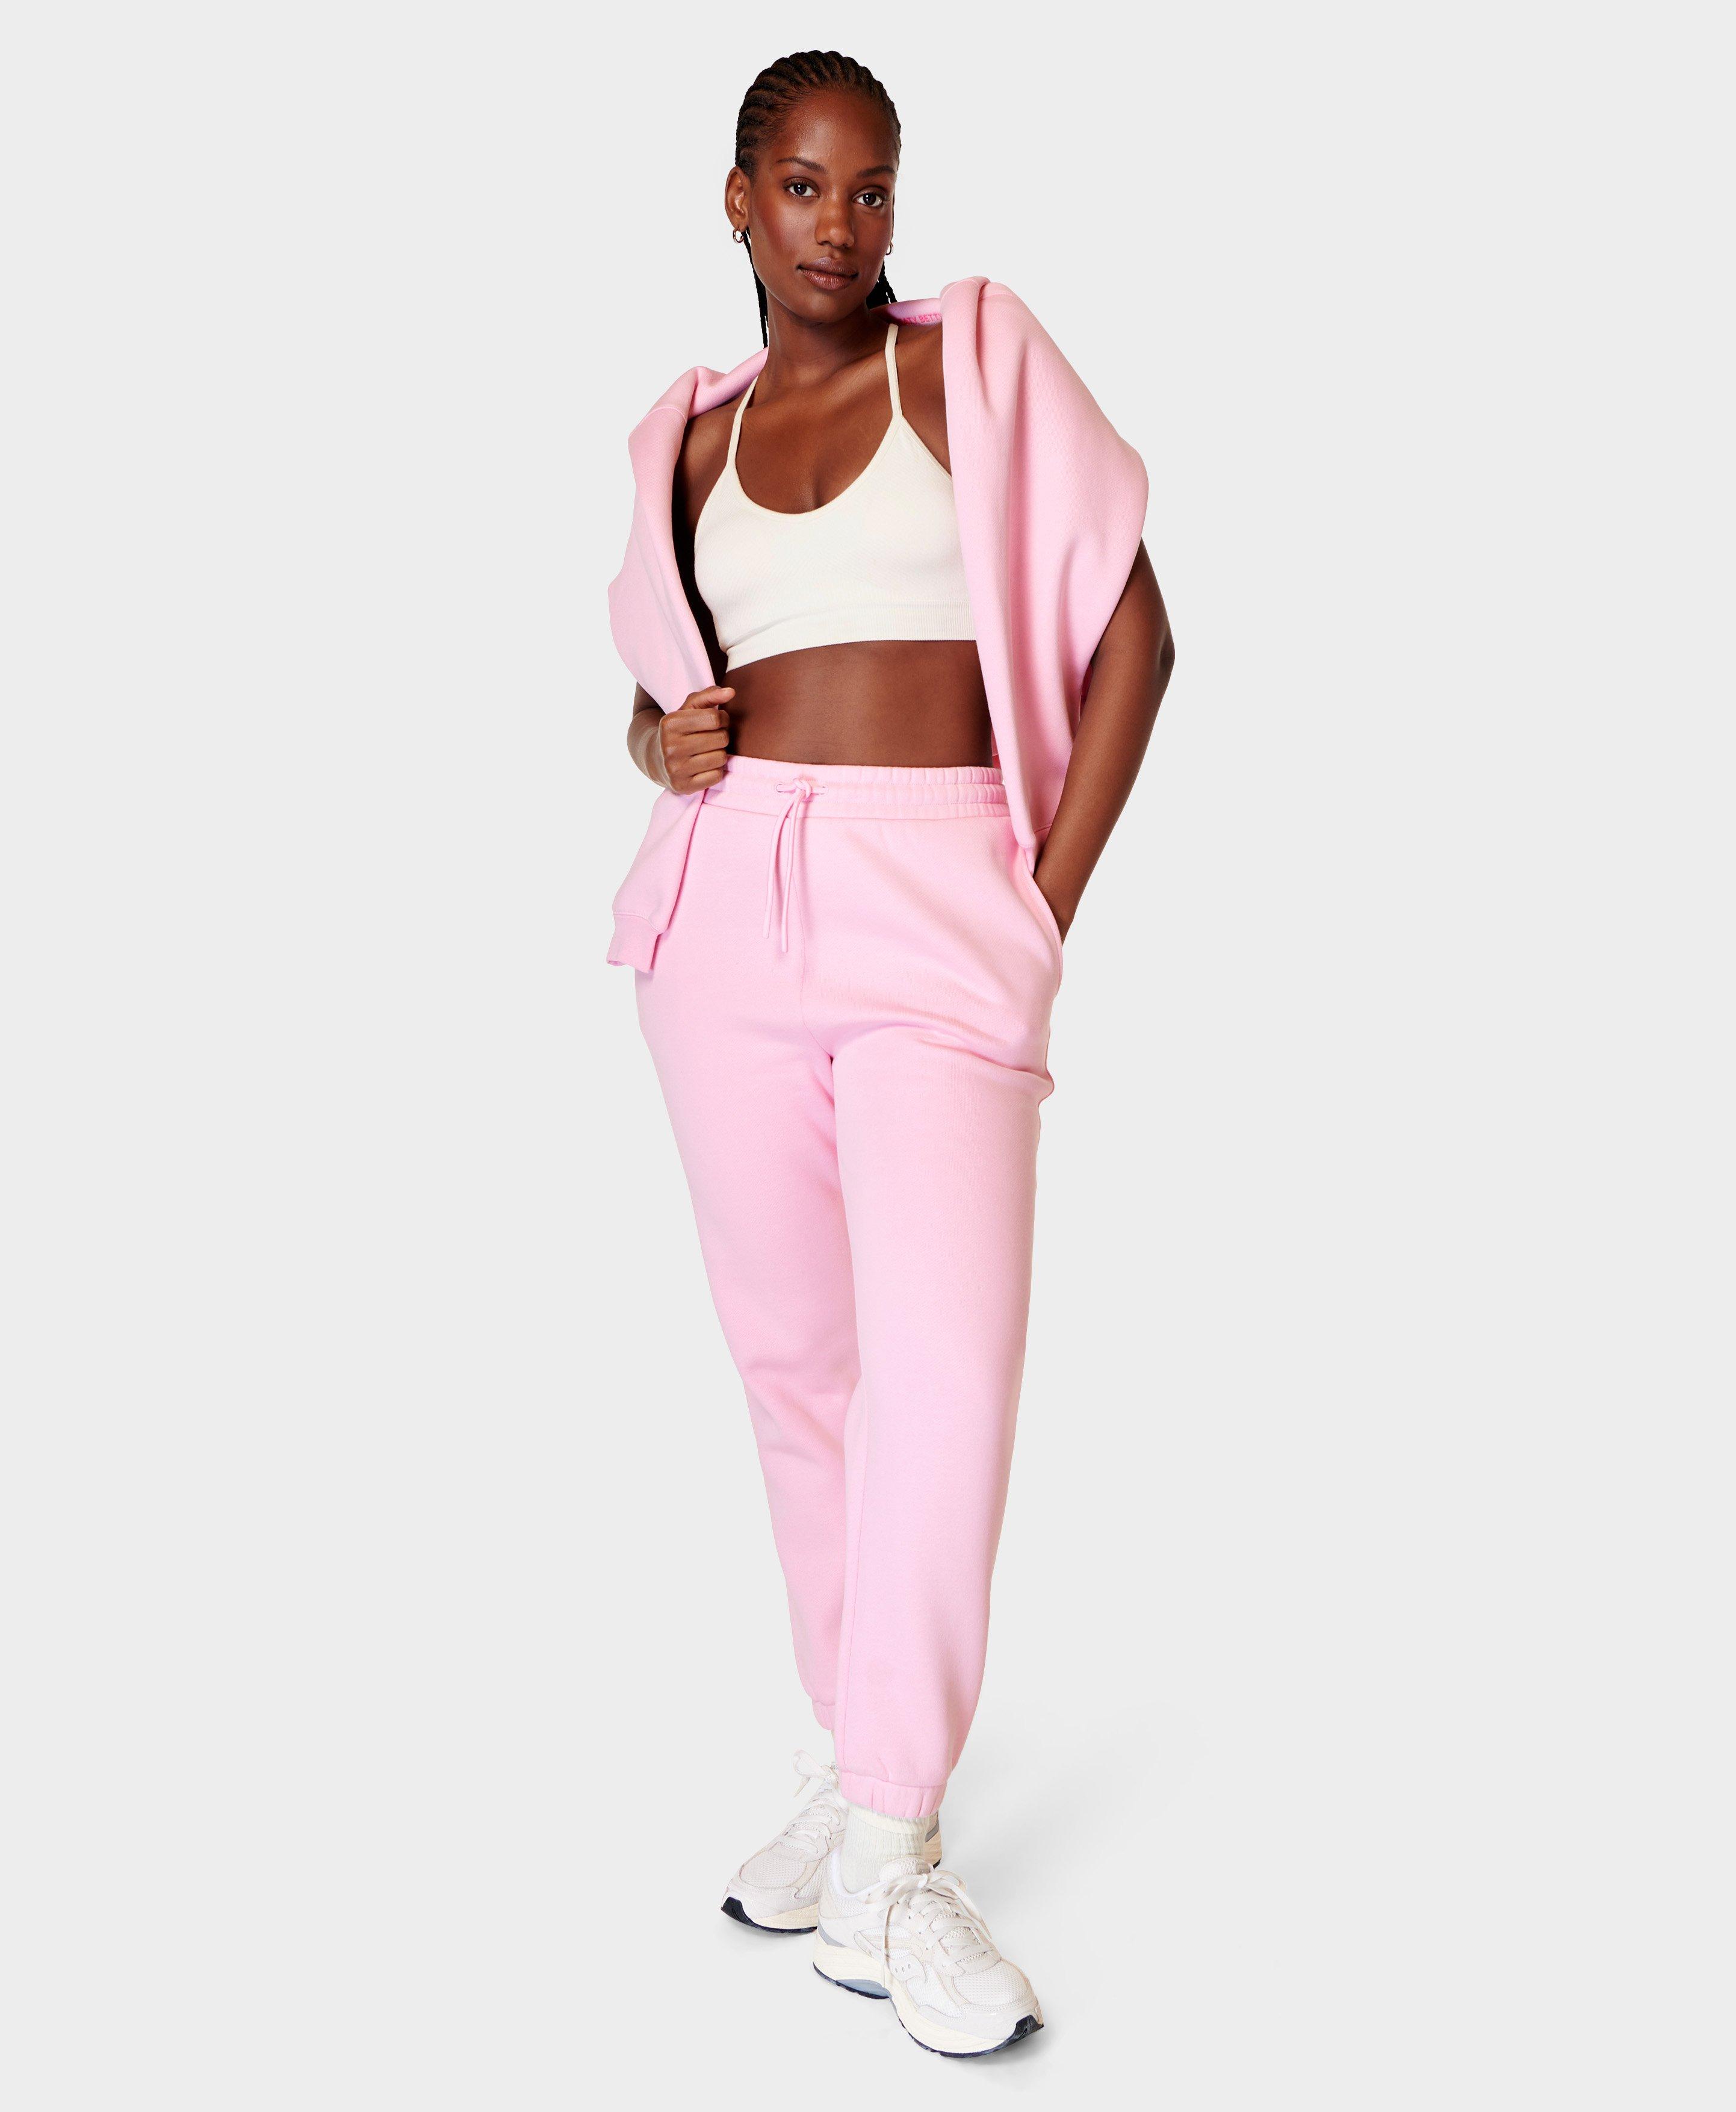 Powerhouse Jogger - Chalk Pink, Women's Pants